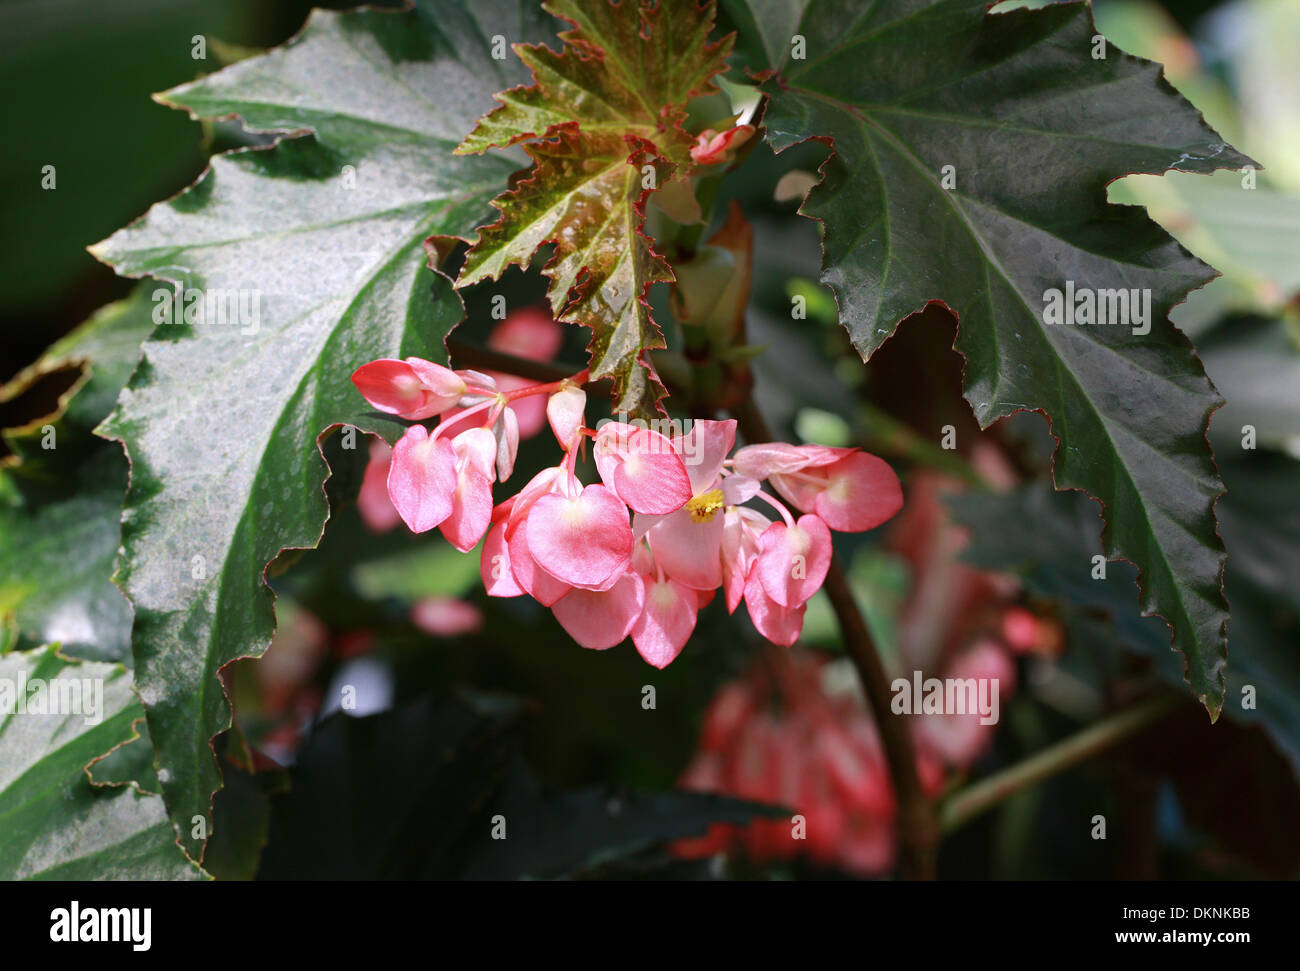 Cane-Stemmed Begonia (Superba Type), Begonia 'Irene Nuss', Begoniaceae. Stock Photo